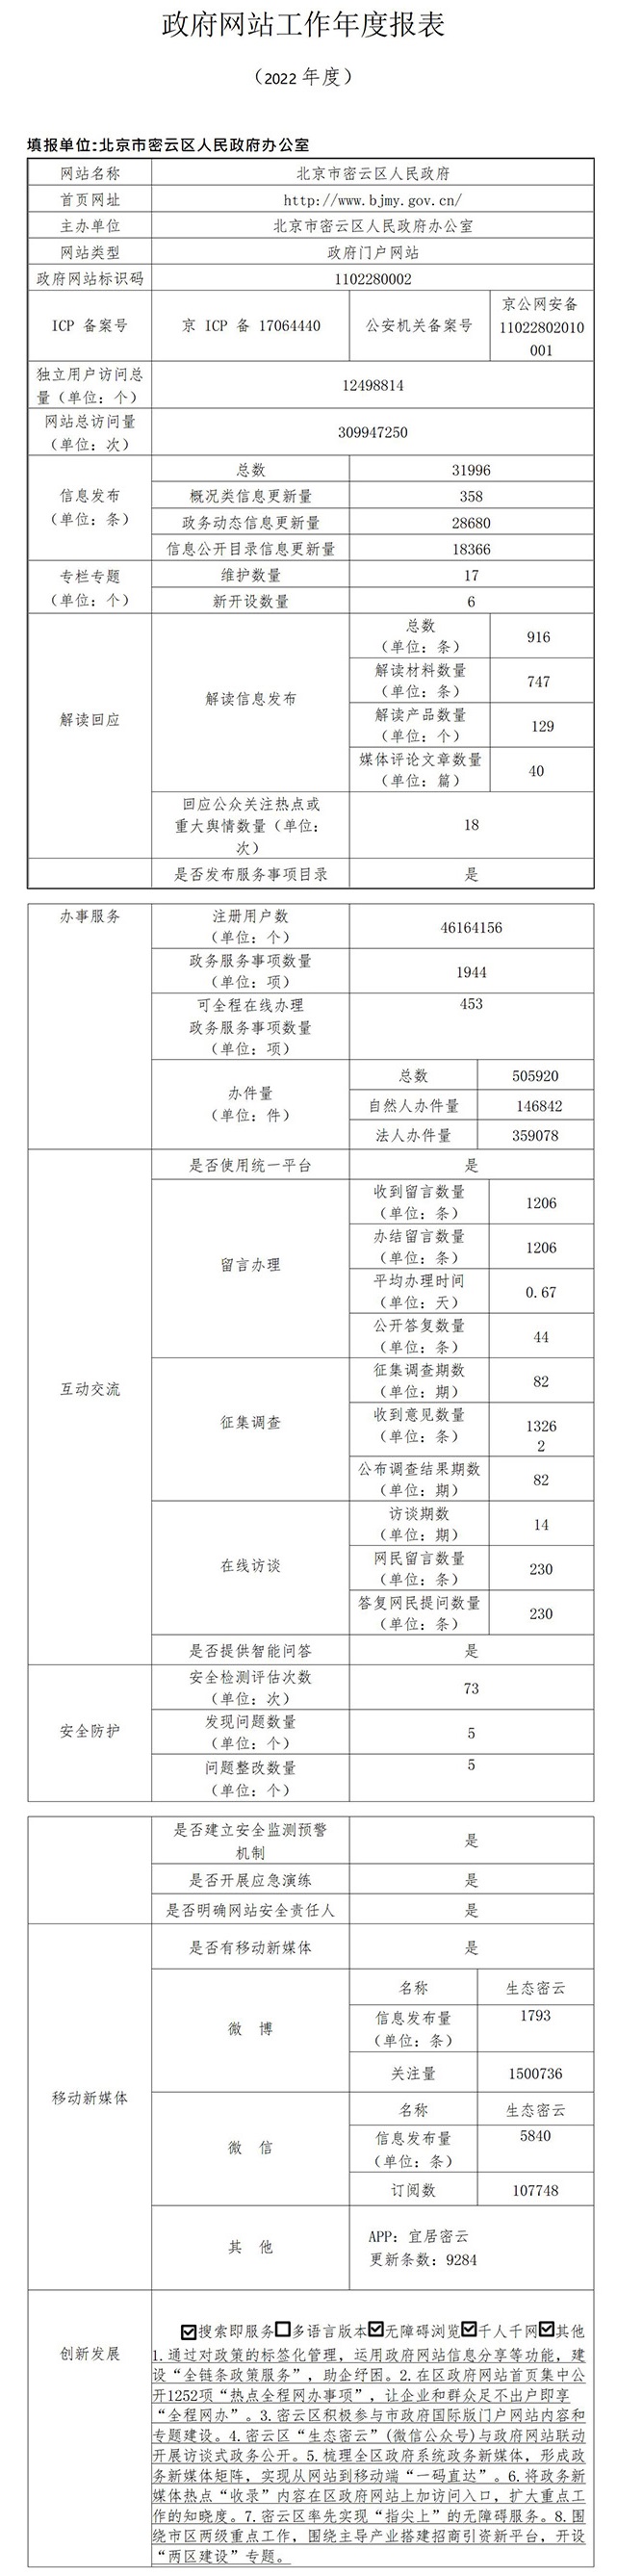 北京市密云区人民政府网站工作年度报表（2022 年度）.jpg